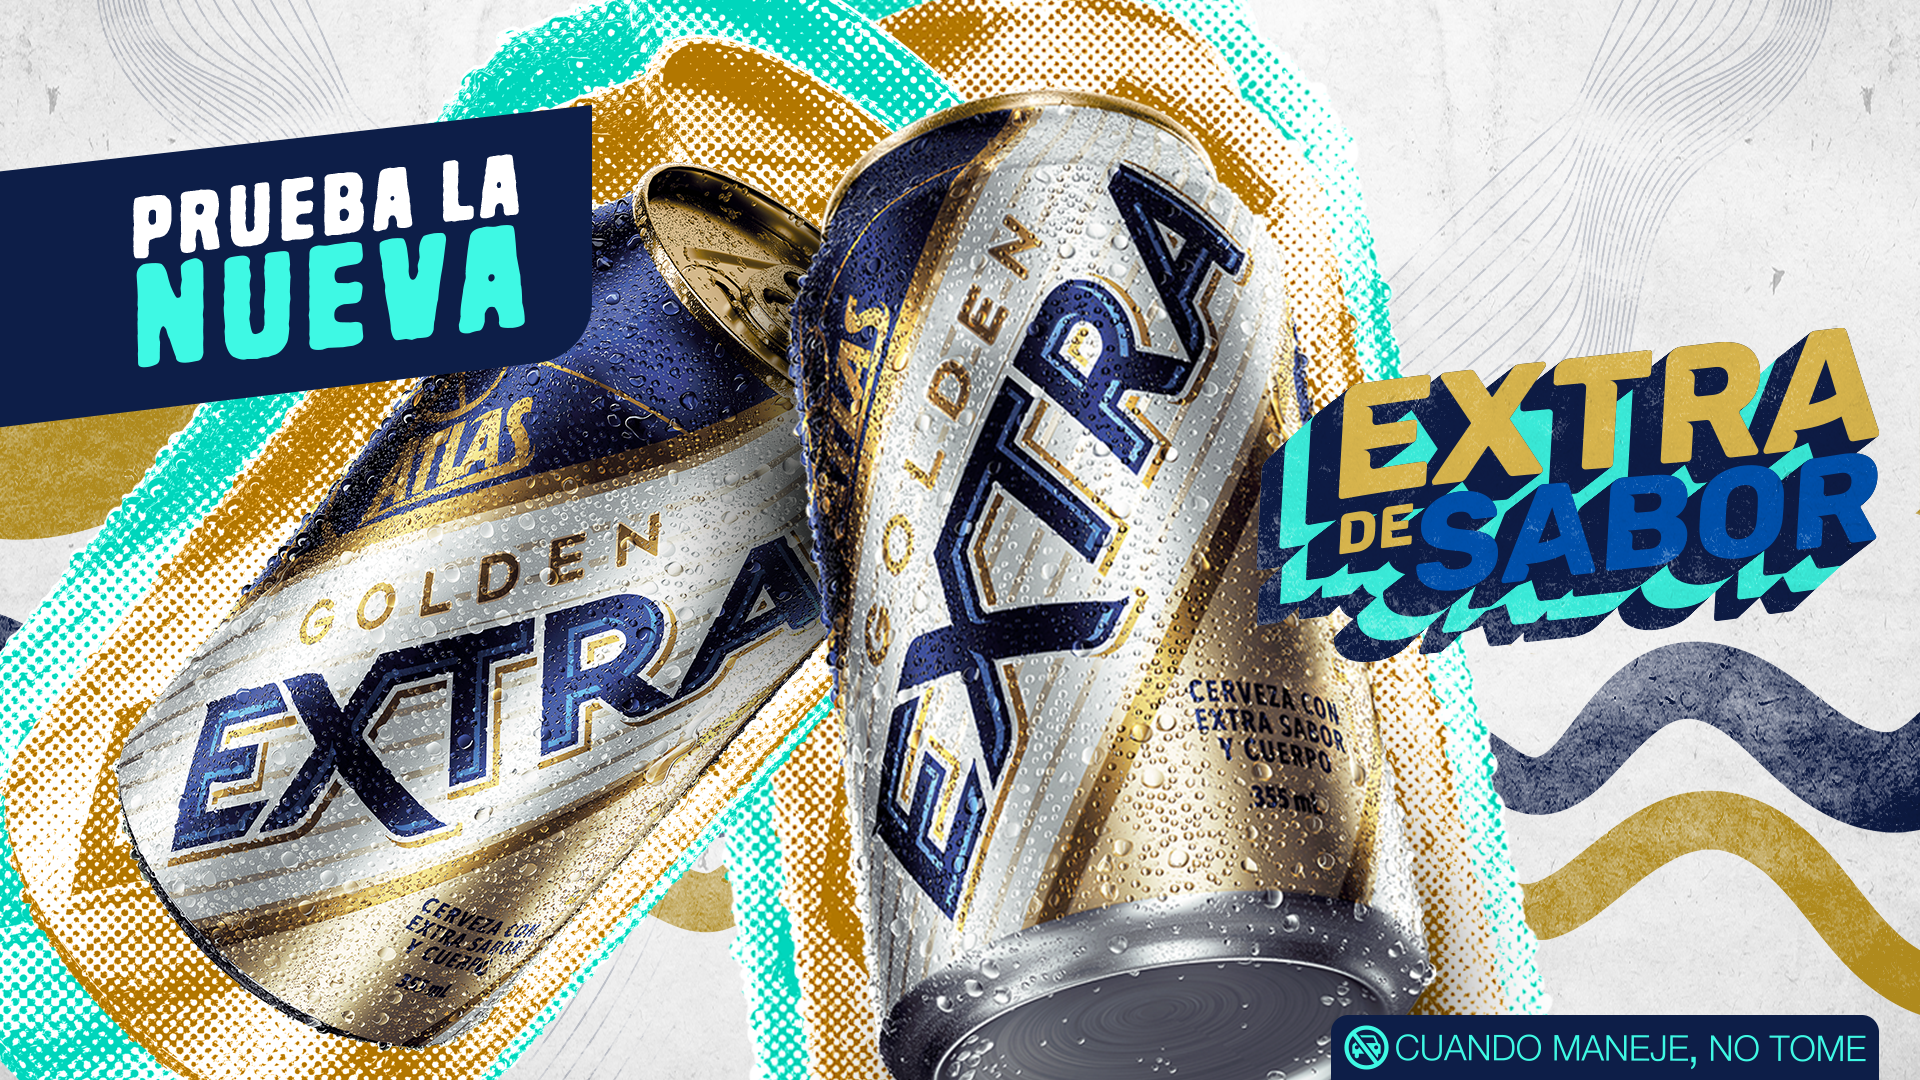 Atlas Golden Extra cervecería nacional panamá